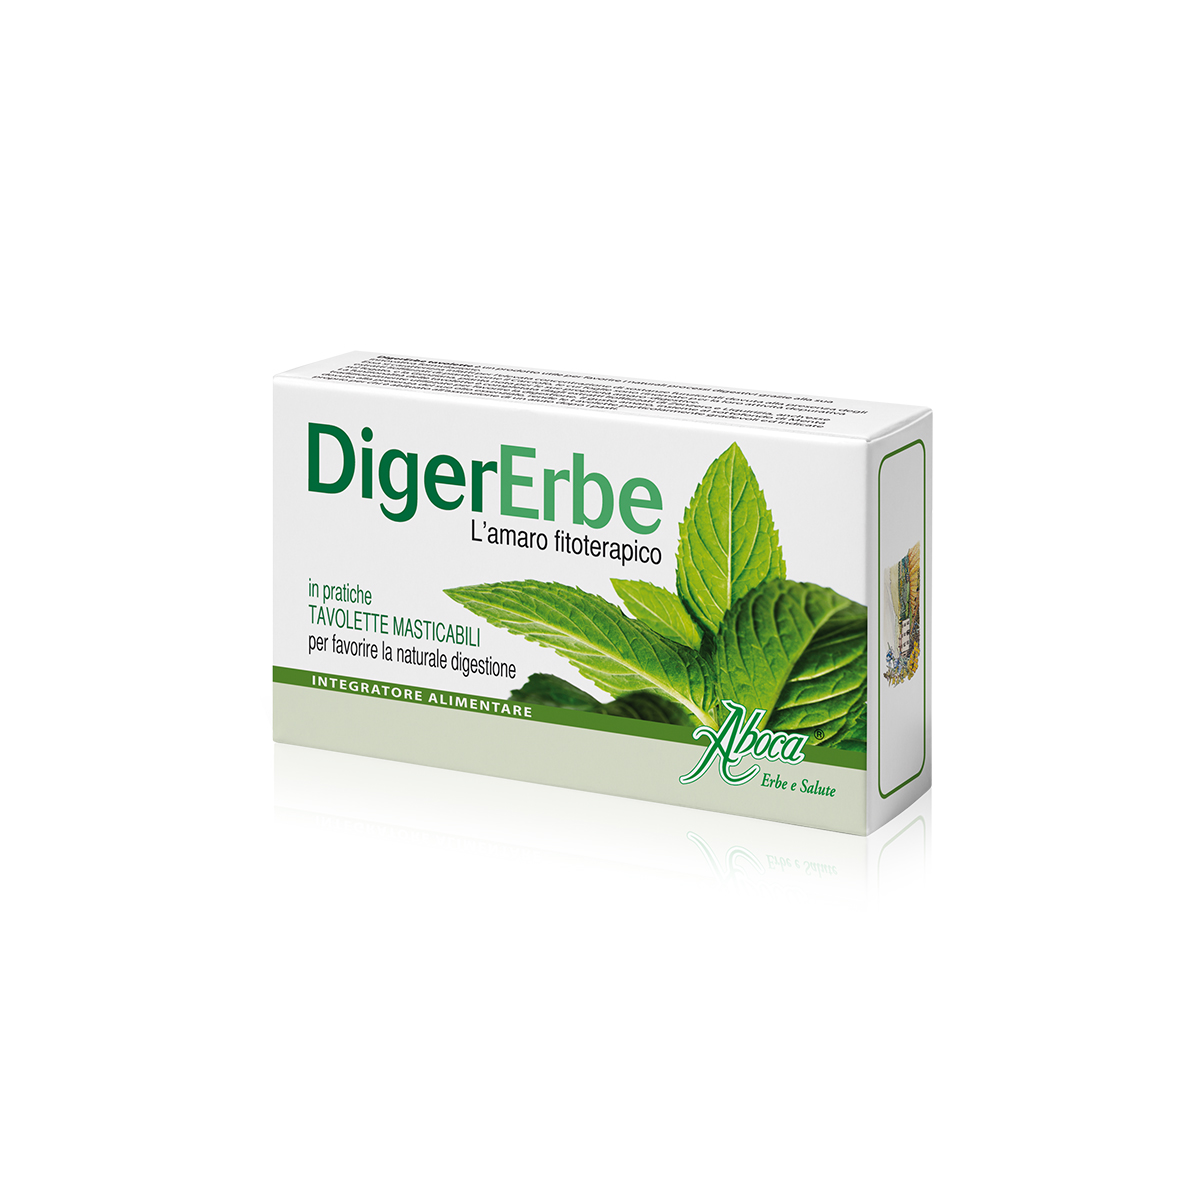 DigerErbe, 30 tablete masticabile